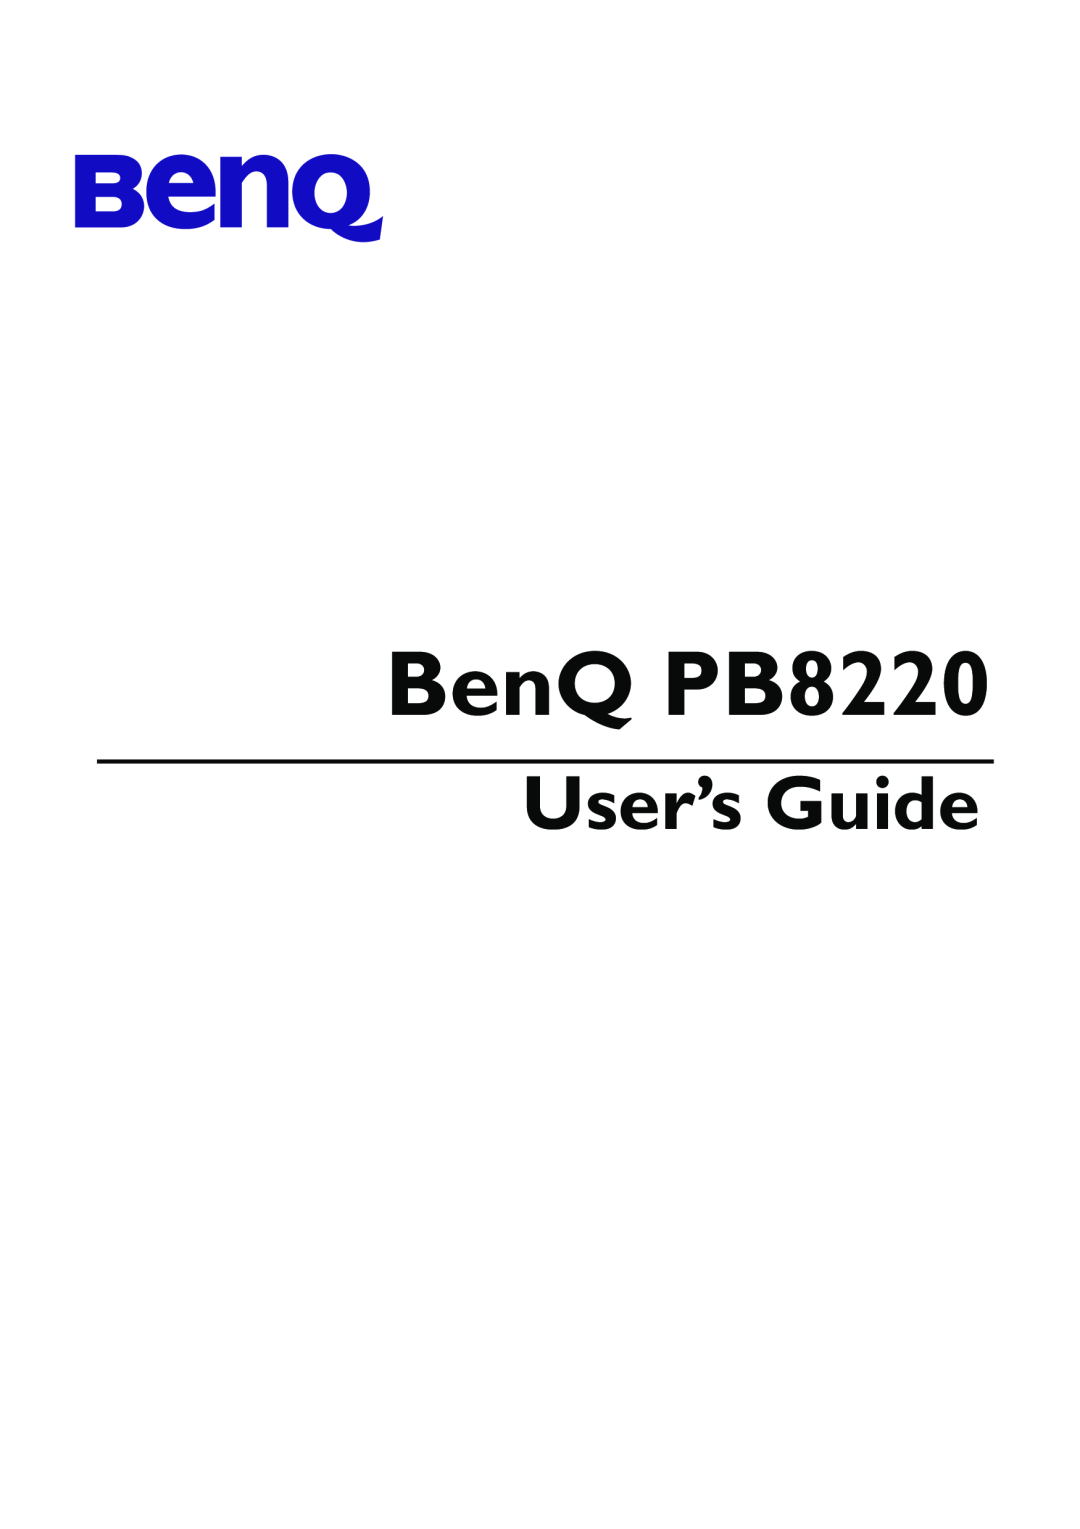 Acer manual BenQ PB8220, User’s Guide 